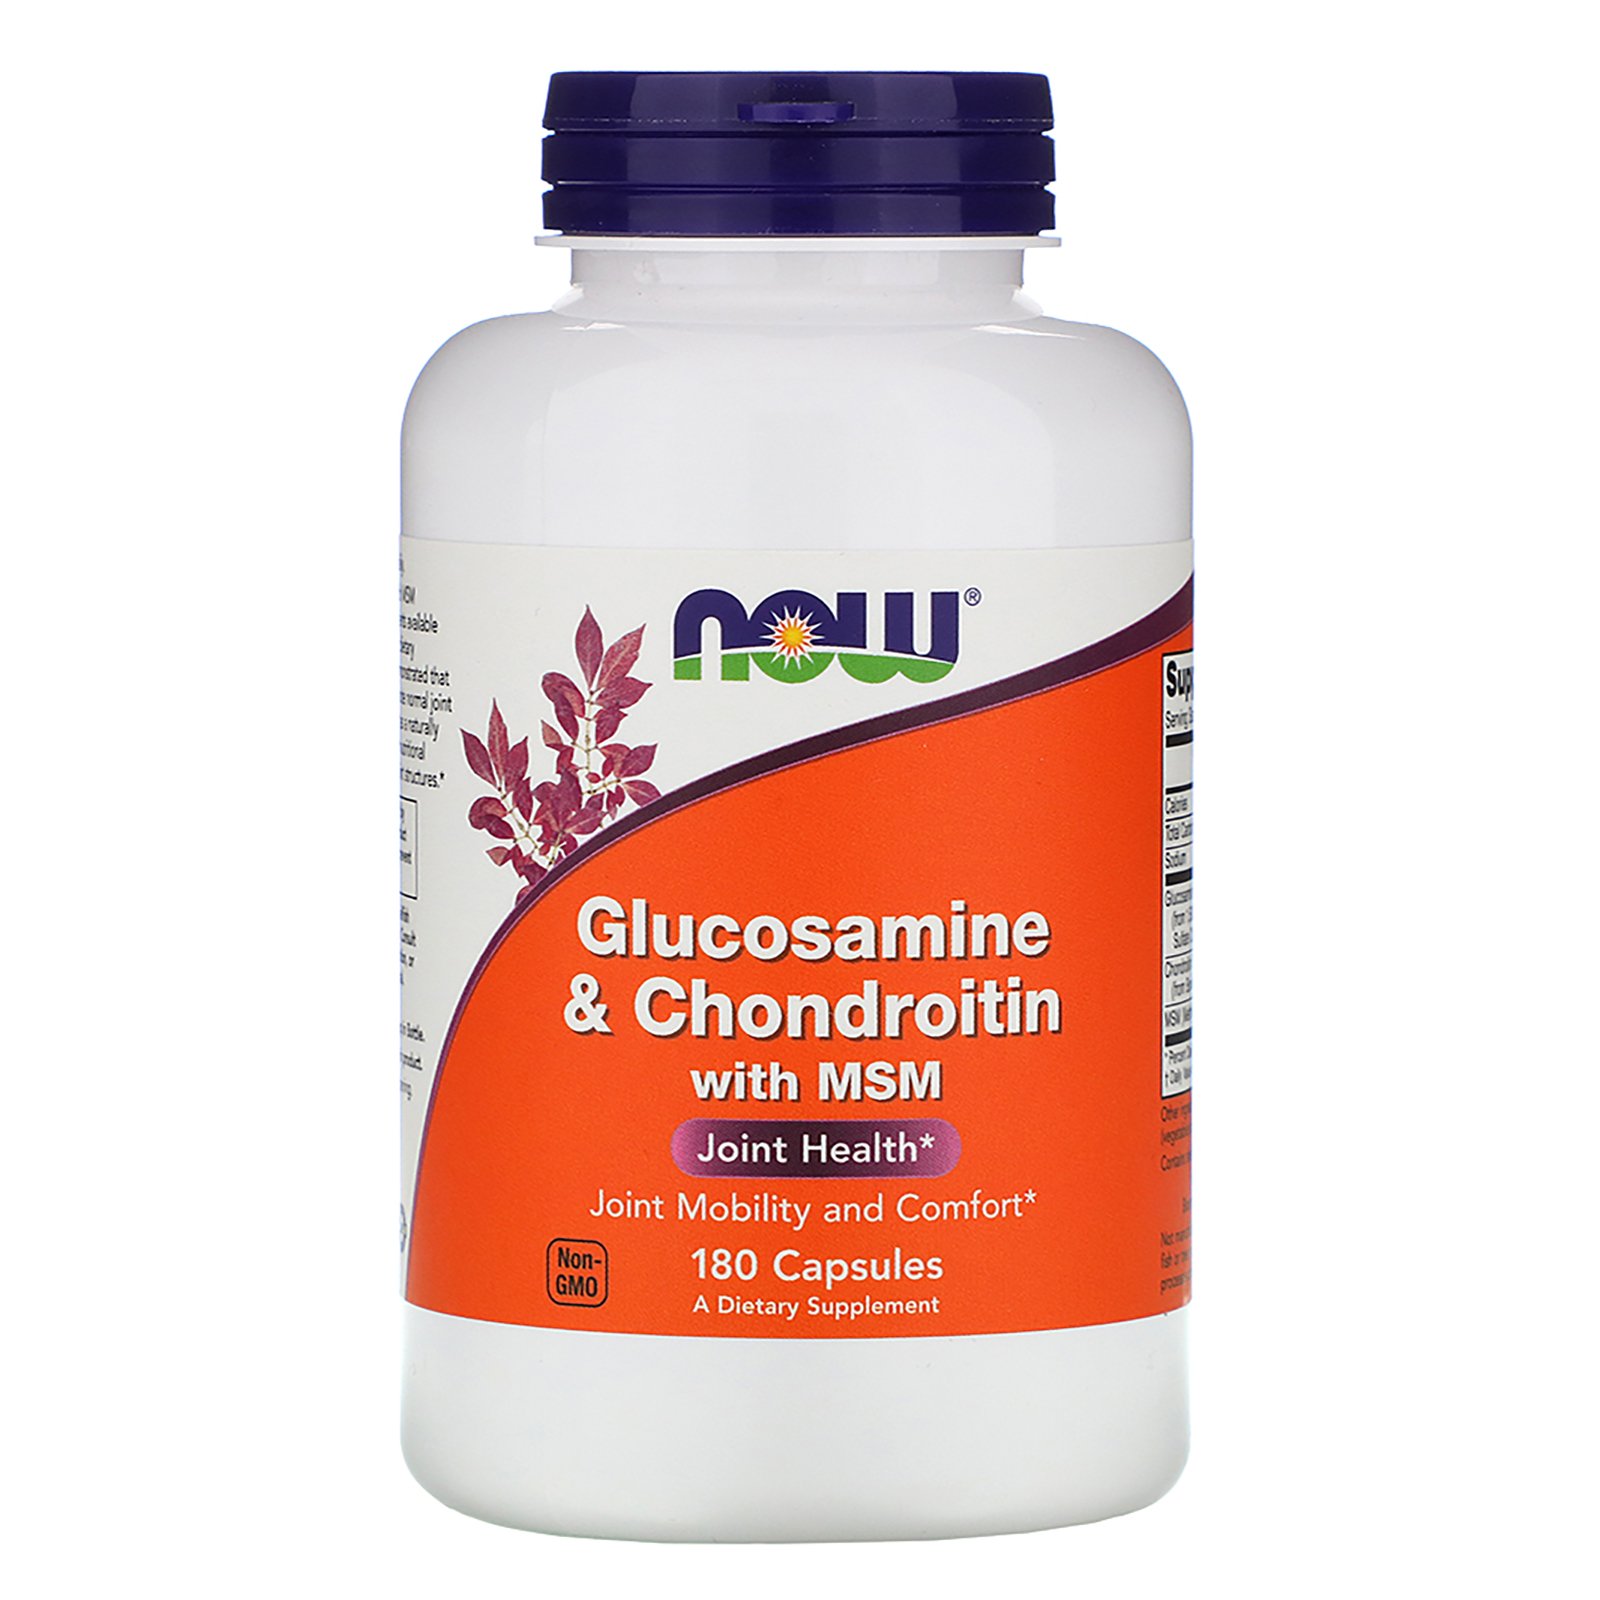 Glucosamine & Chondroitin with MSM, Глюкозамин и Хондроитин с МСМ - 180 капсул